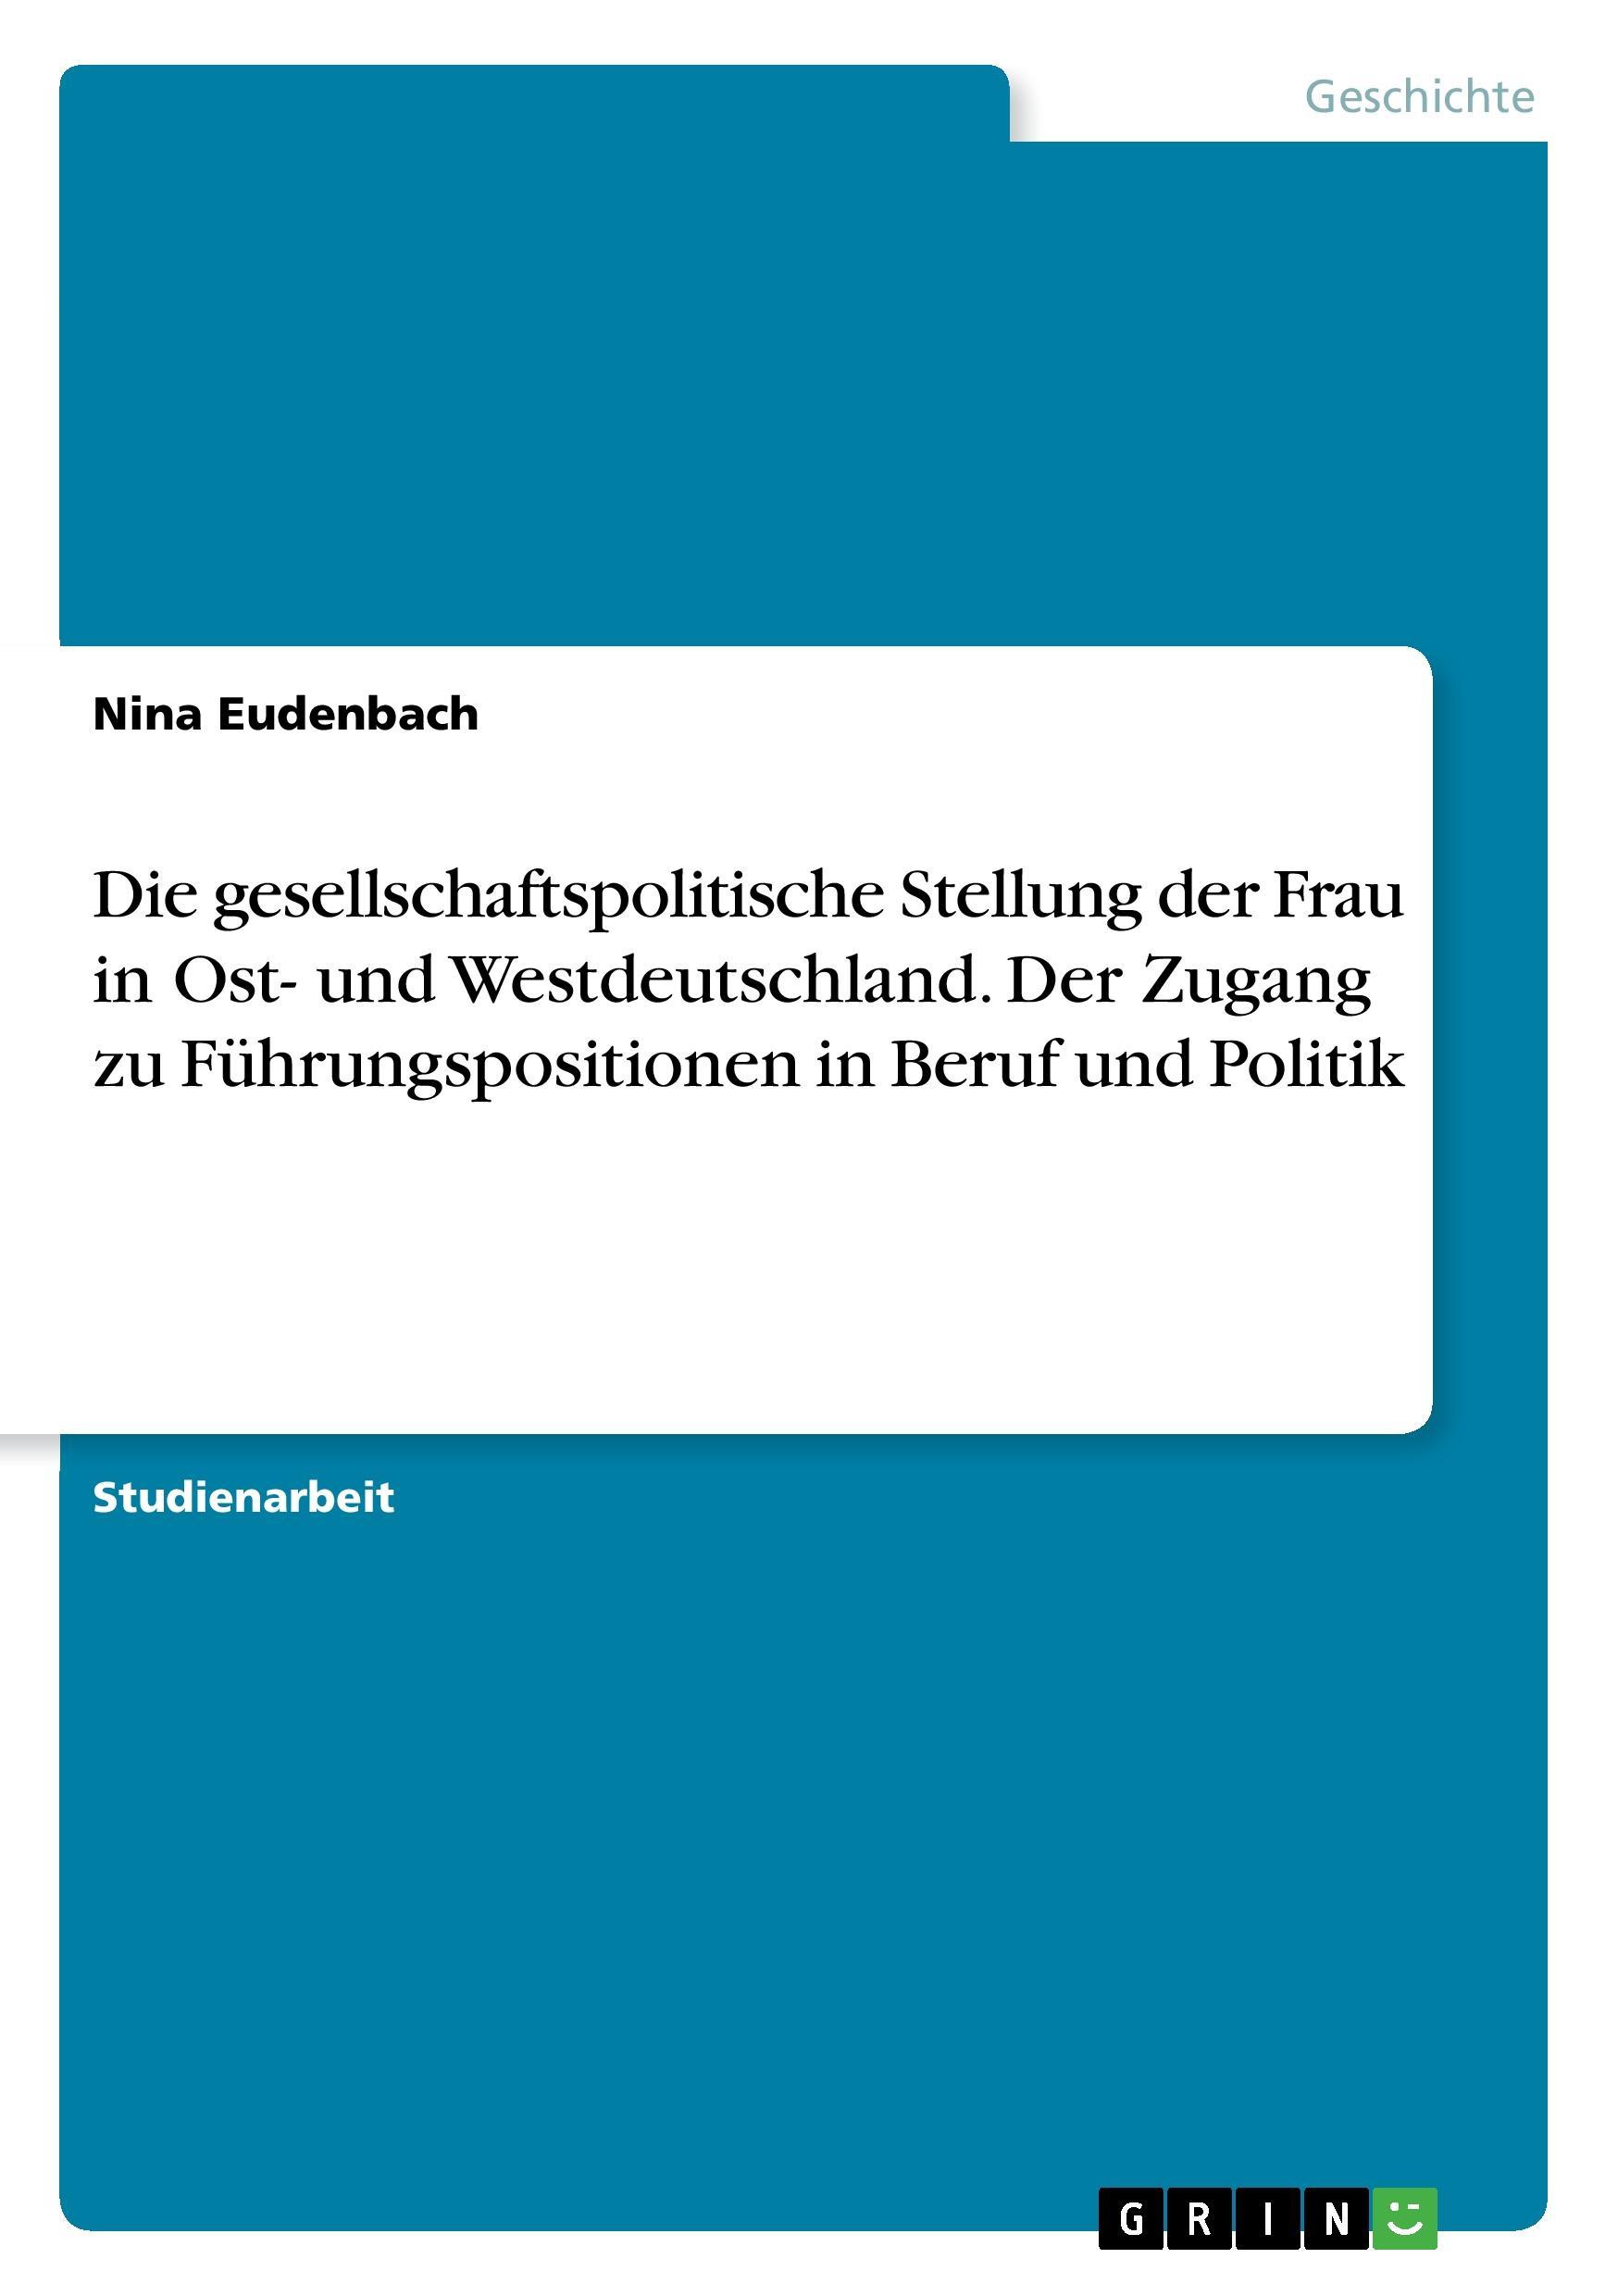 Die gesellschaftspolitische Stellung der Frau in Ost- und Westdeutschland. Der Zugang zu Führungspositionen in Beruf und Politik